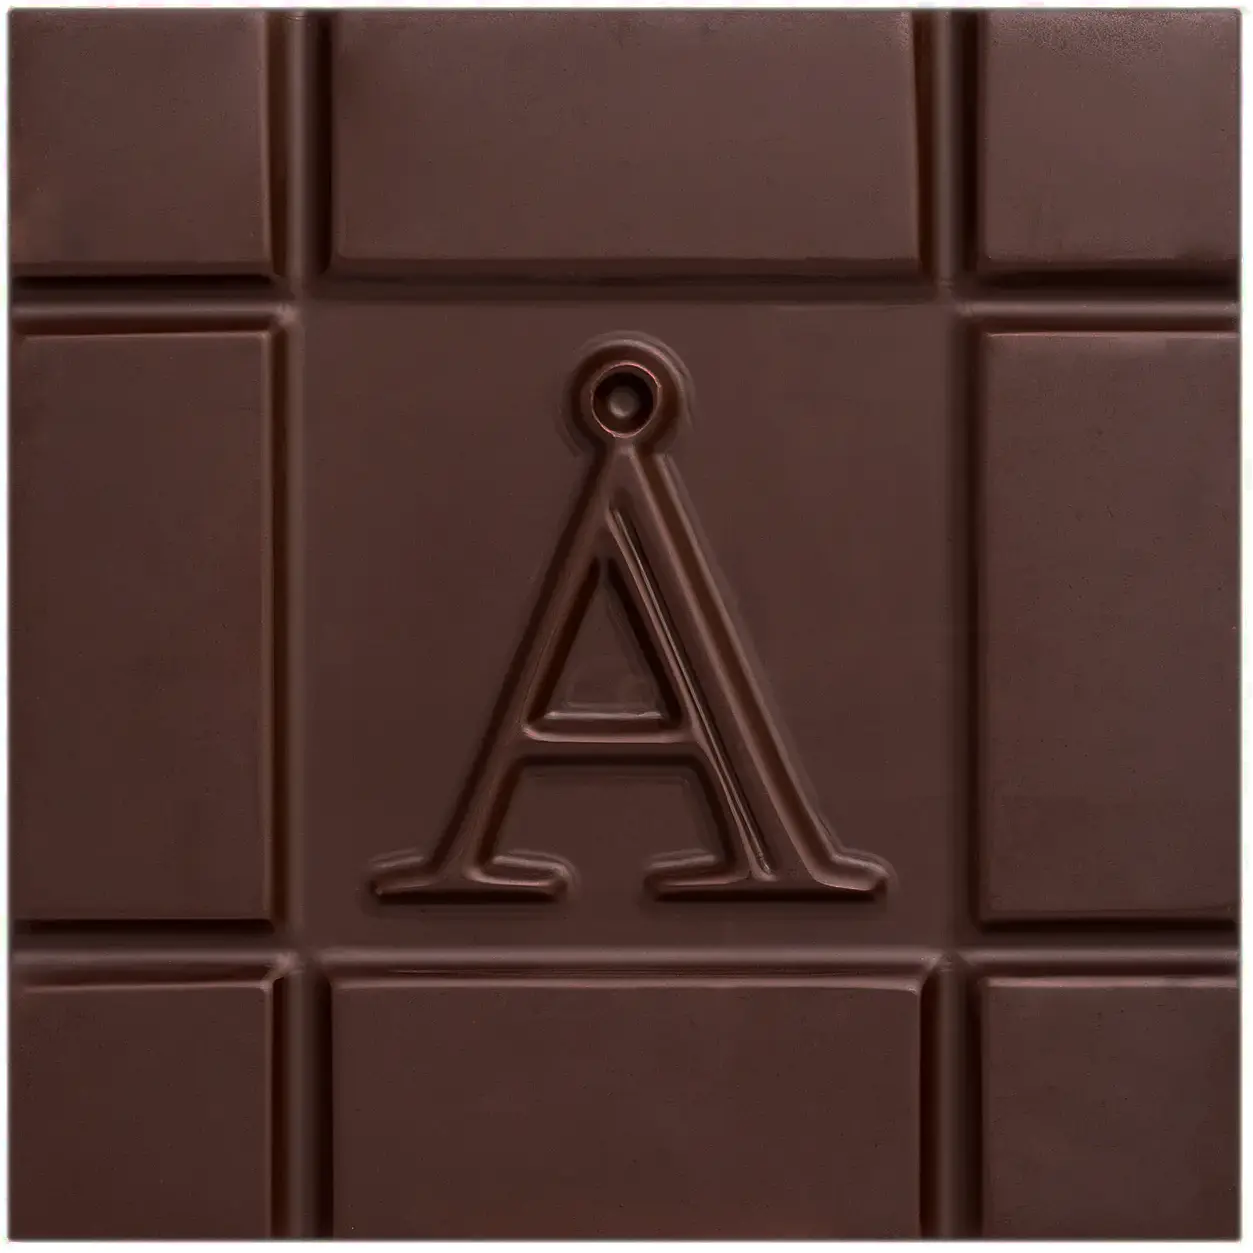 AKESSON'S Schokoladen | Madagascar »Criollo« Kakaomasse 100%  | BIO | 60g